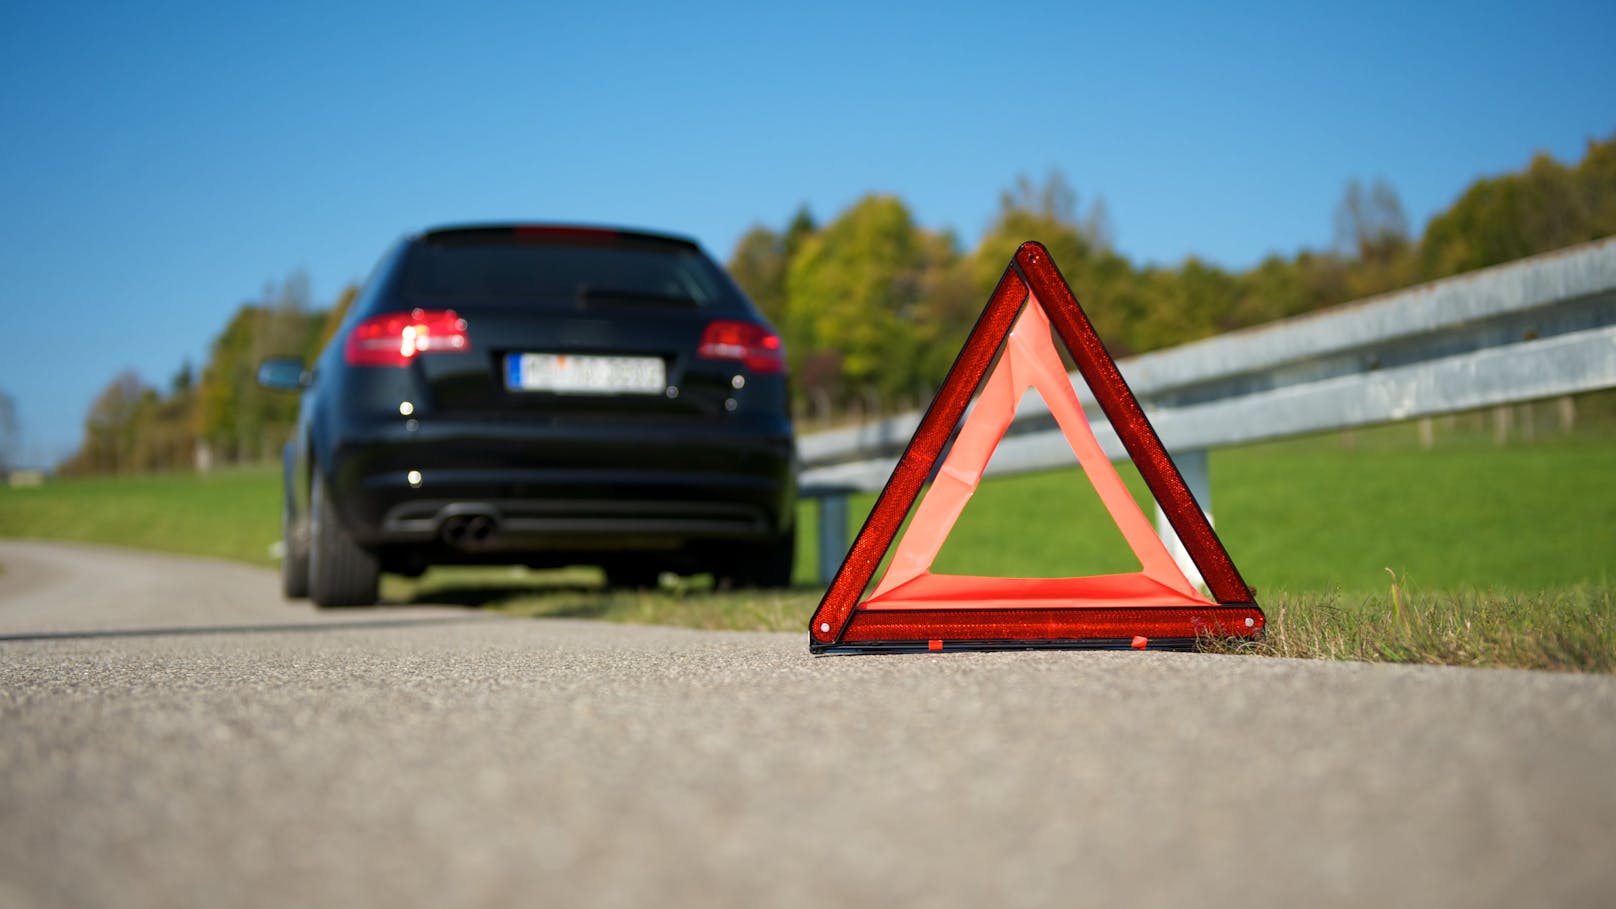 Über 50 Prozent der Autofahrer auf Salzburgs Straßen wissen nicht, wo das Warndreieck oder Verbandszeug verstaut ist.